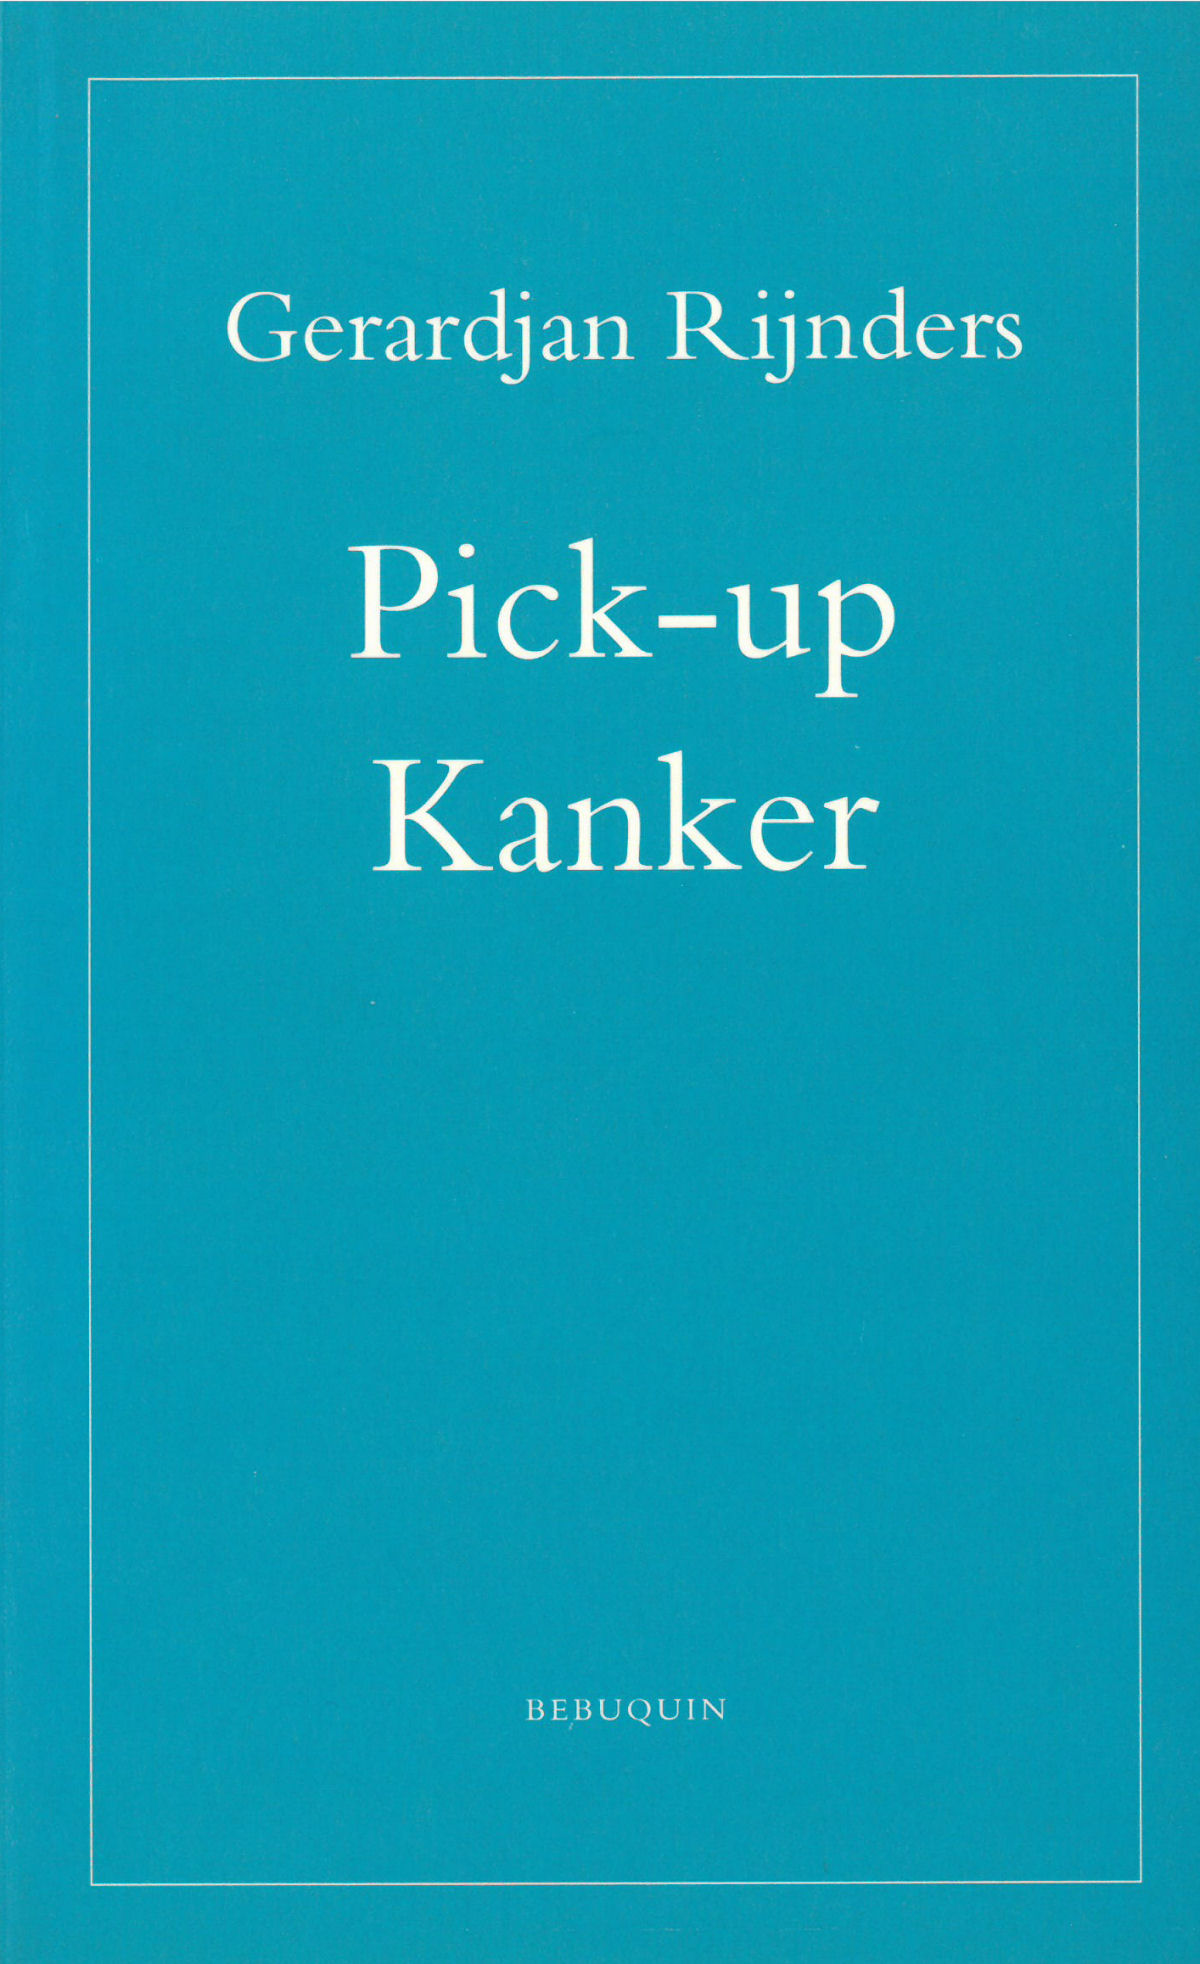 Pick-up/Kanker